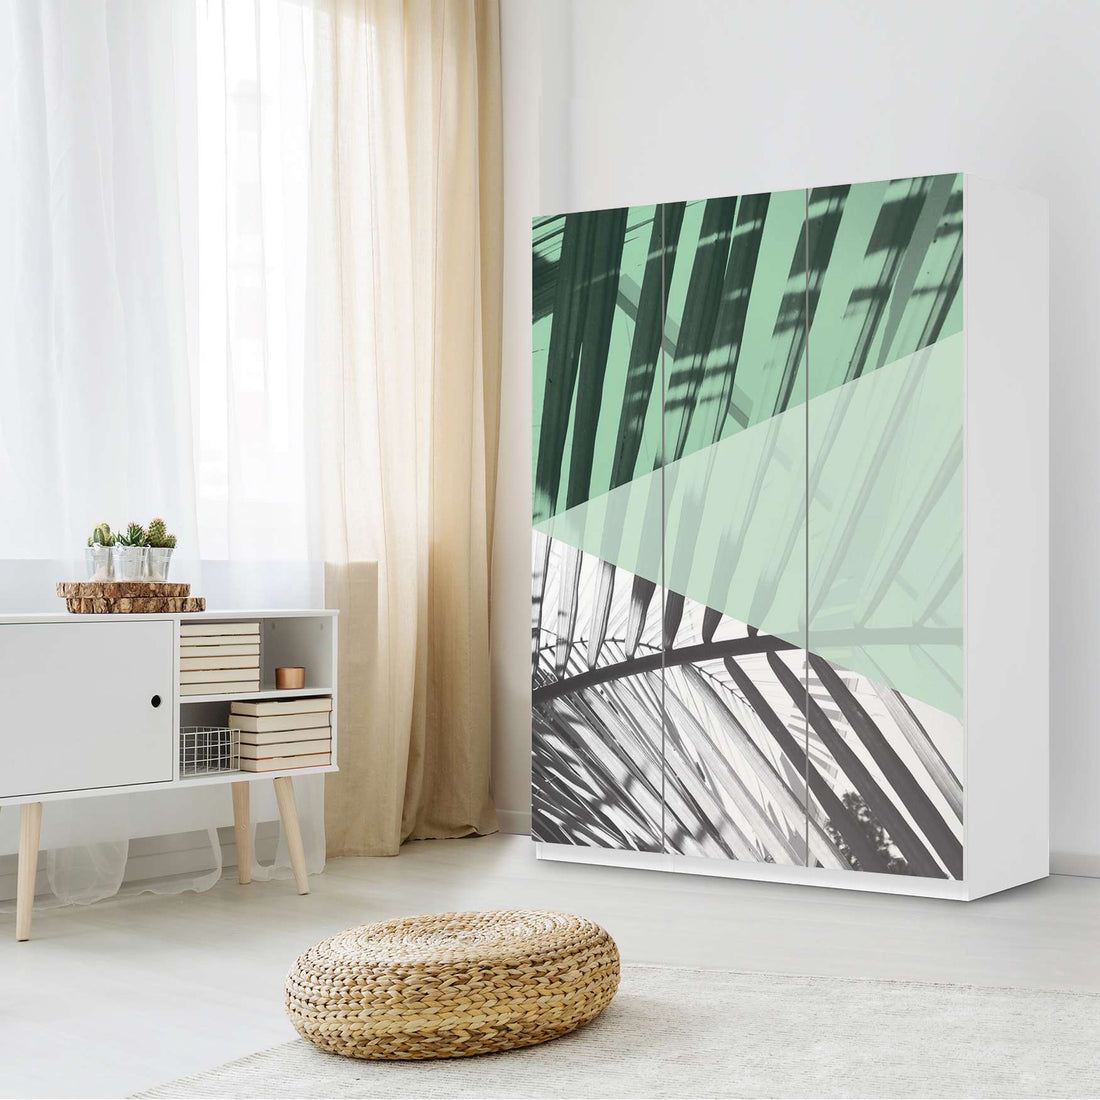 Folie für Möbel IKEA Pax Schrank 201 cm Höhe - 3 Türen - Design: Palmen mint